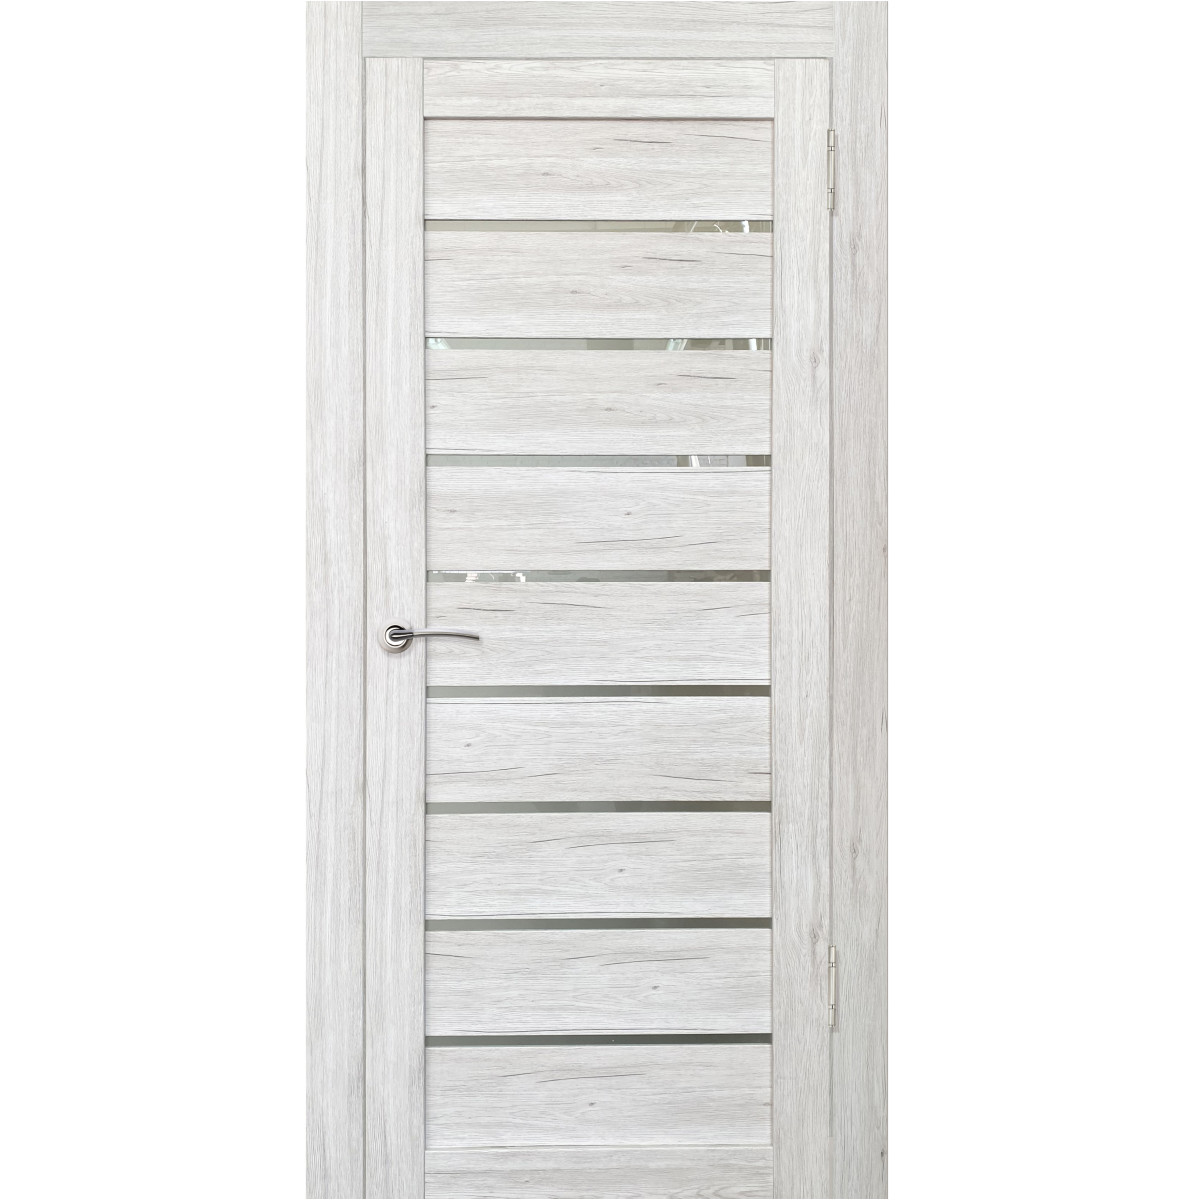 Дверь межкомнатная остеклённая Тиволи 60х200 см с фурнитурой, ПВХ, цвет рустик серый